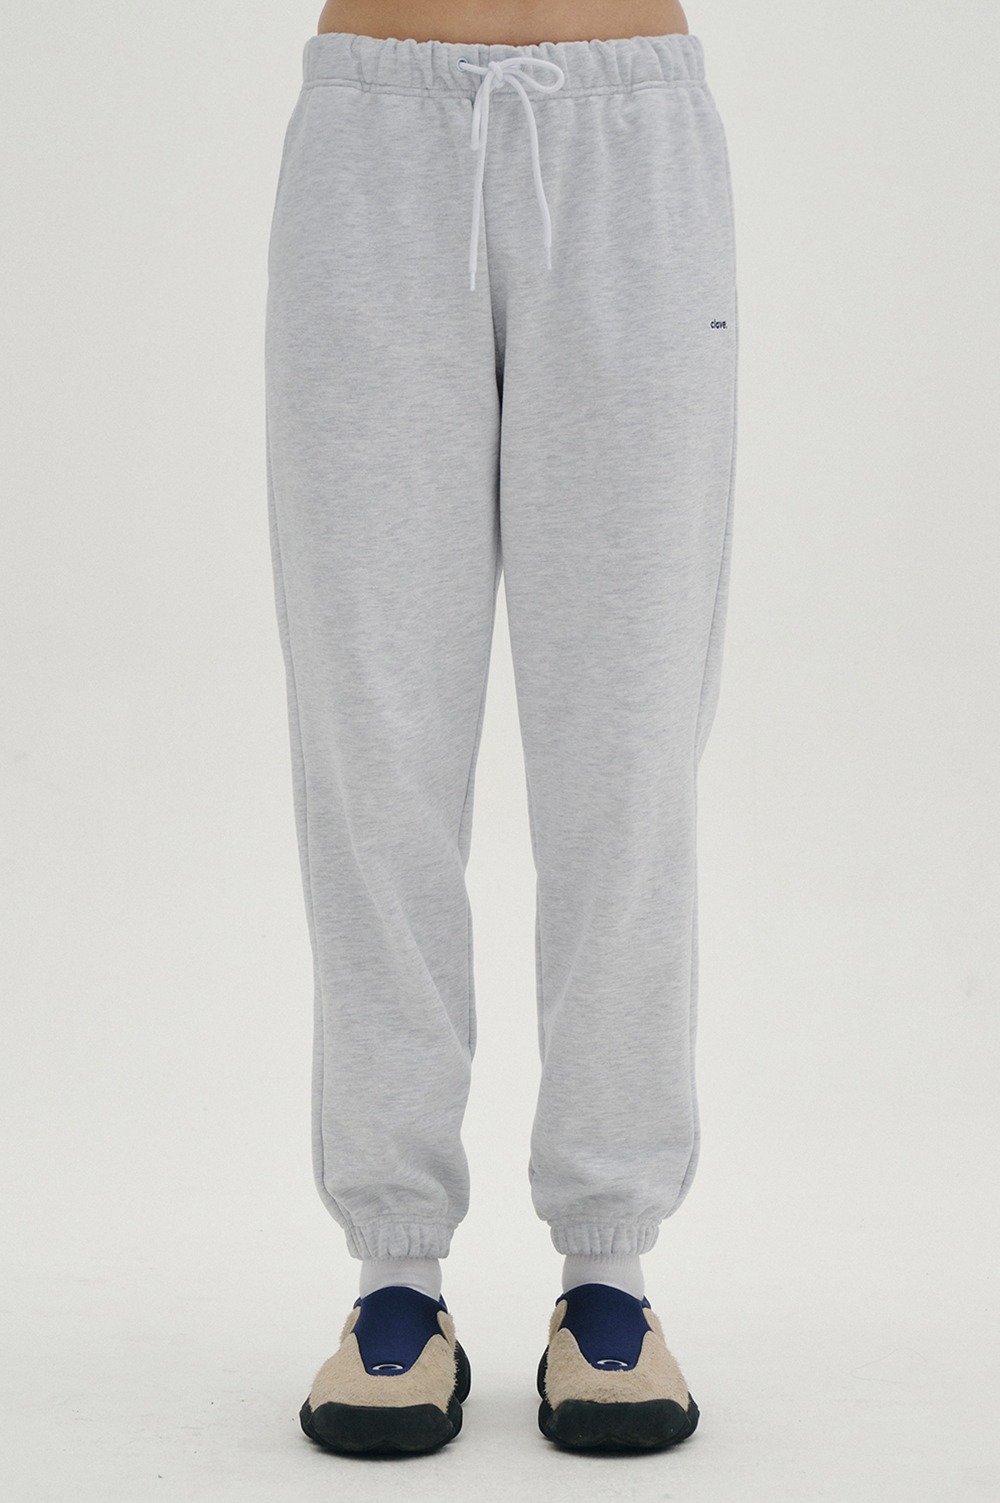 clove - [23SS clove] New Active Sweat Pants_Women (Light Grey)